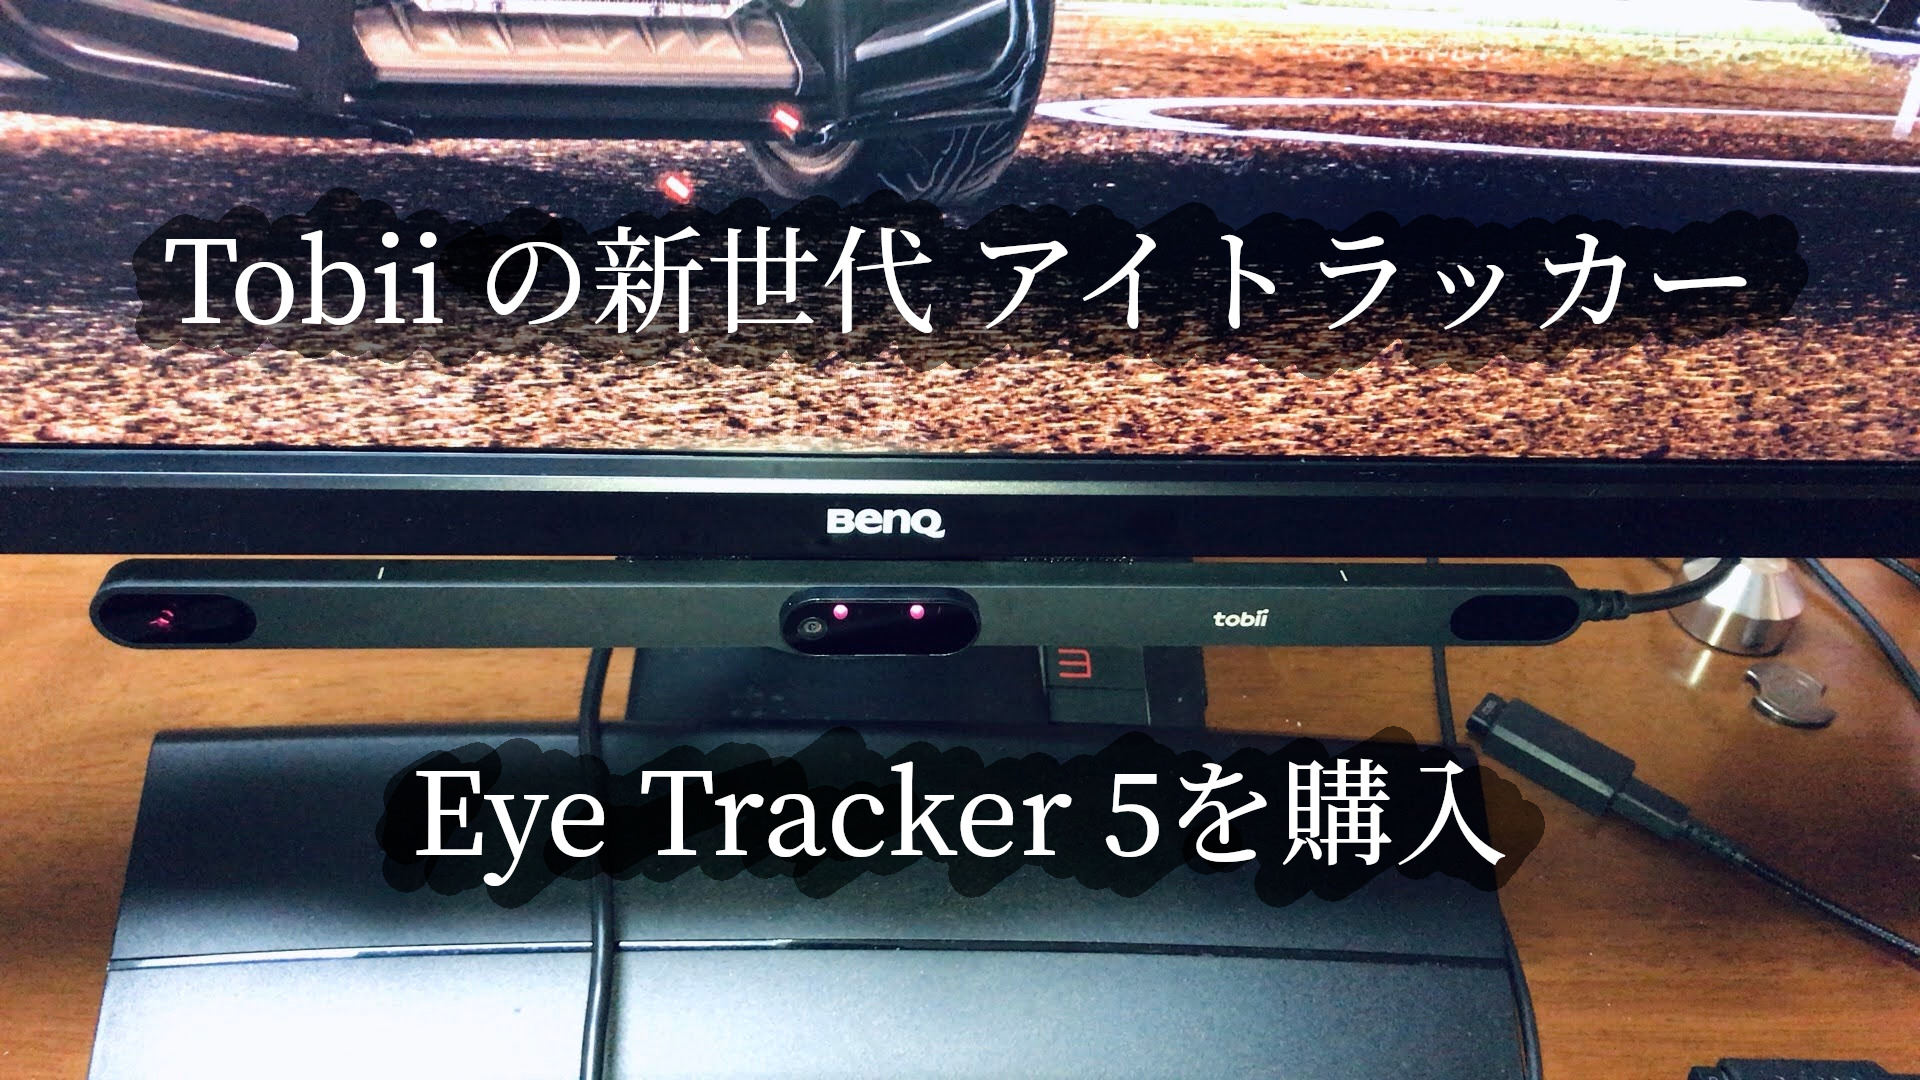 Tobii Eye Tracker 5を購入しました